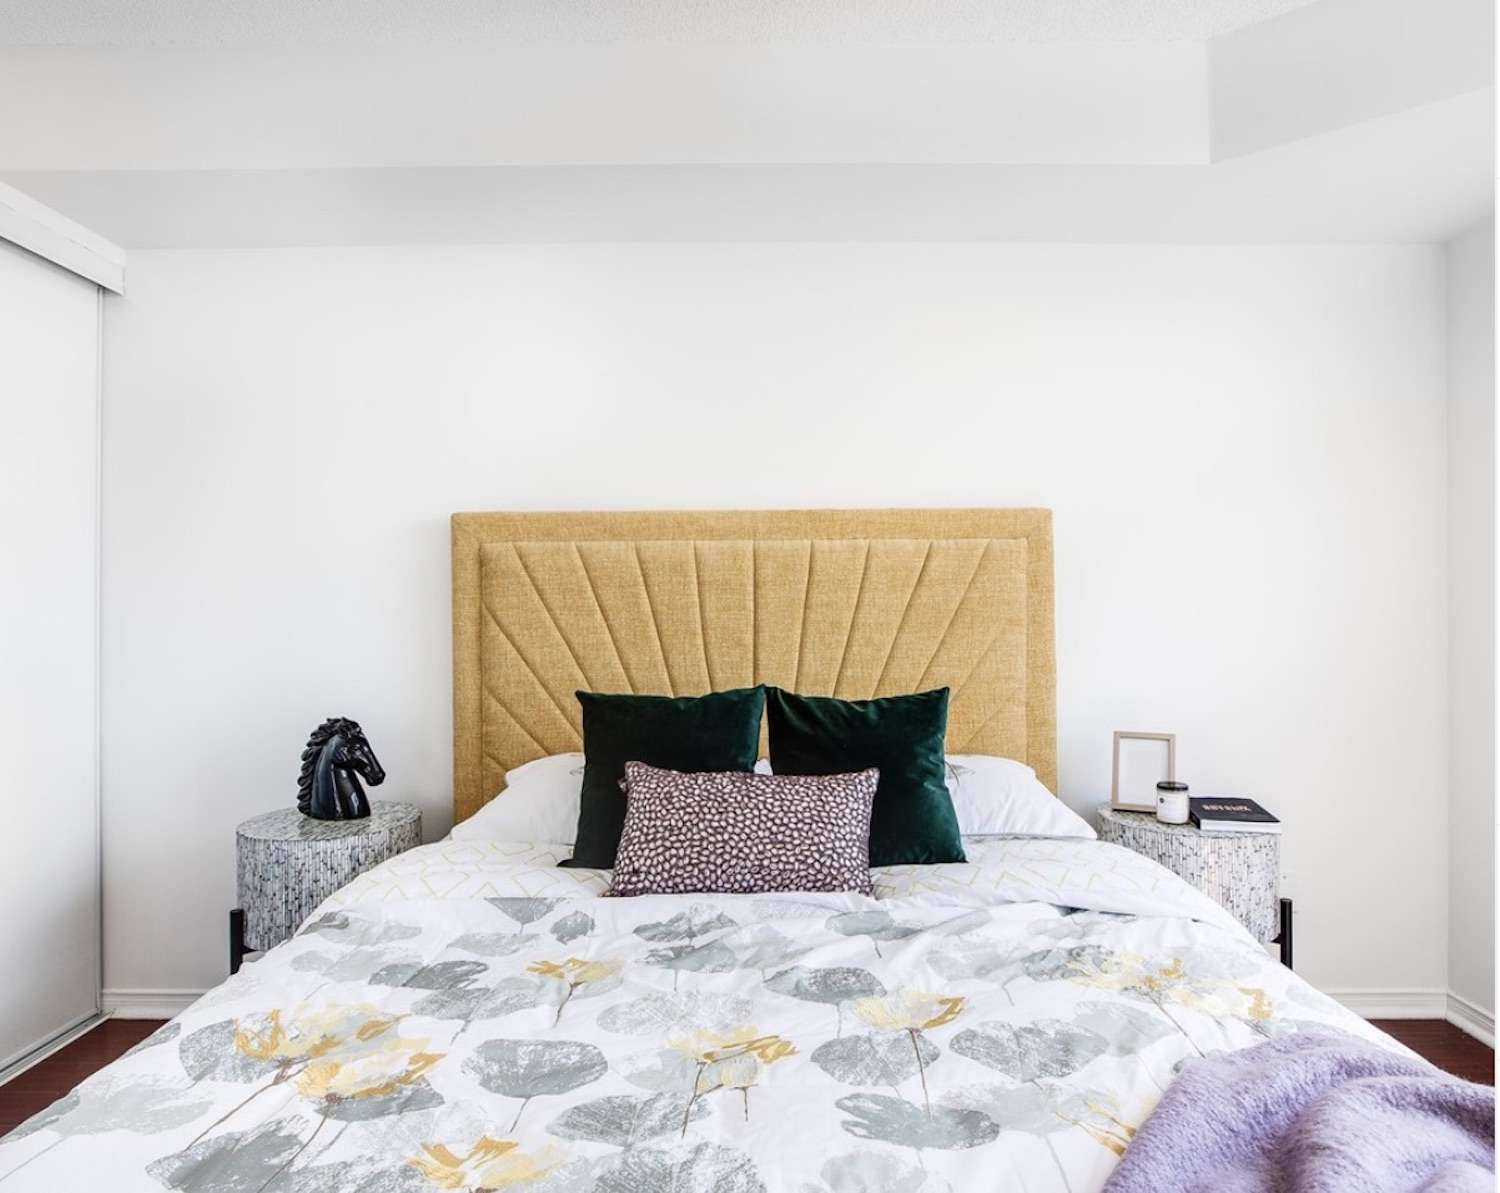 bedrom con combinación de colores amarillo y morado, almohadas de acento verdes y paredes blancas,